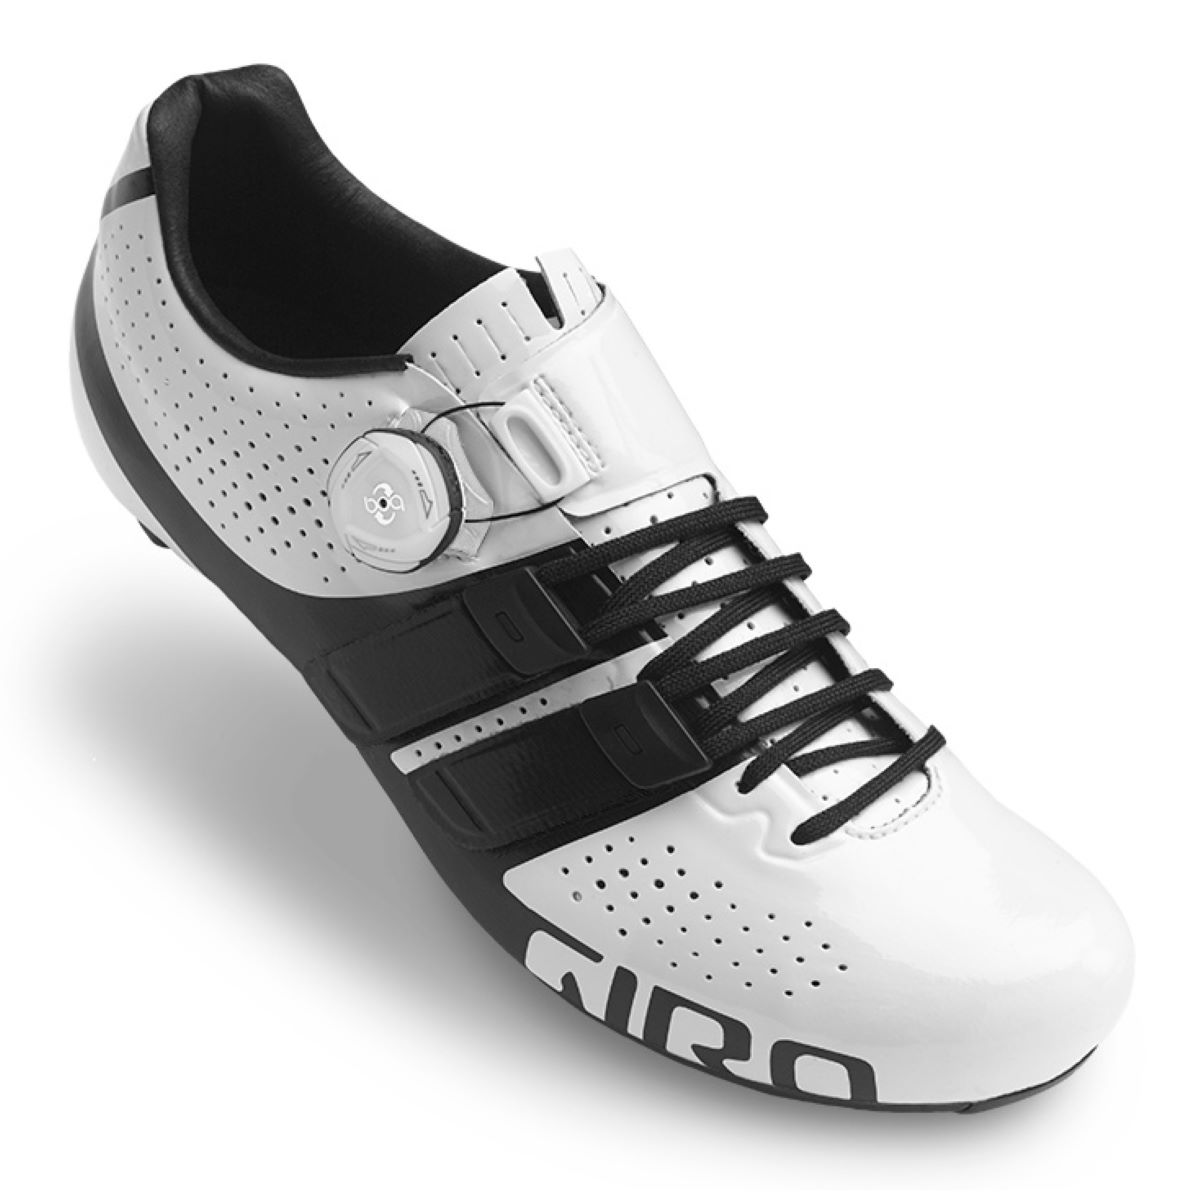 Zapatillas de carretera Giro Factor Techlace - Zapatillas de ciclismo